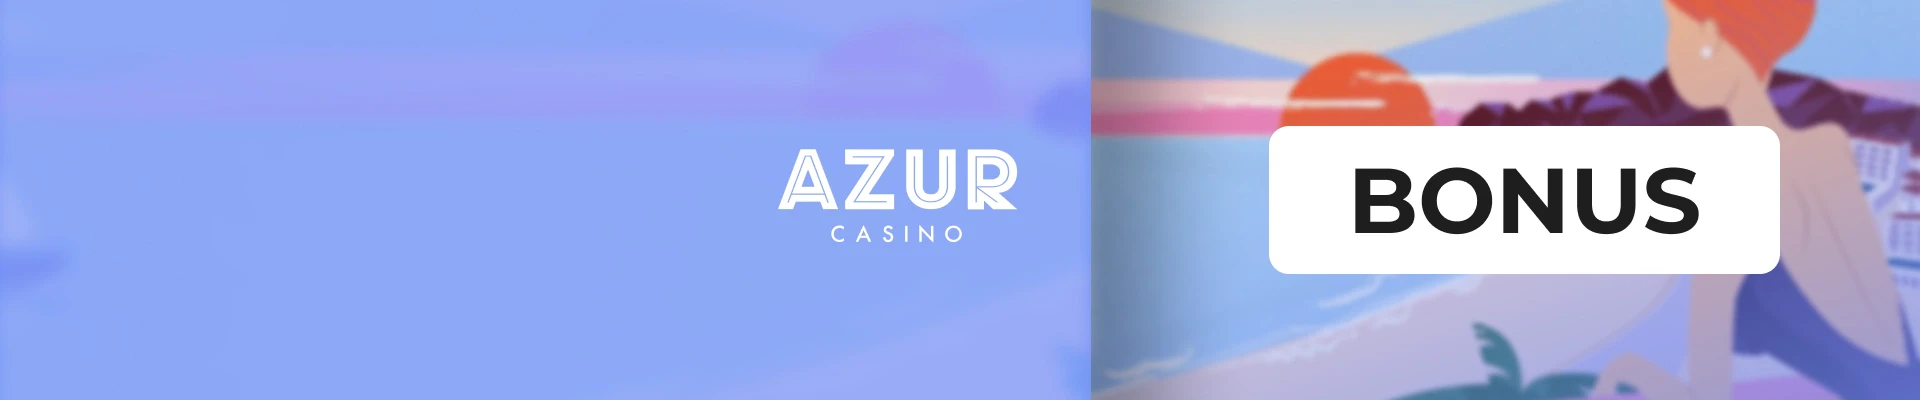 bonus azur casino header